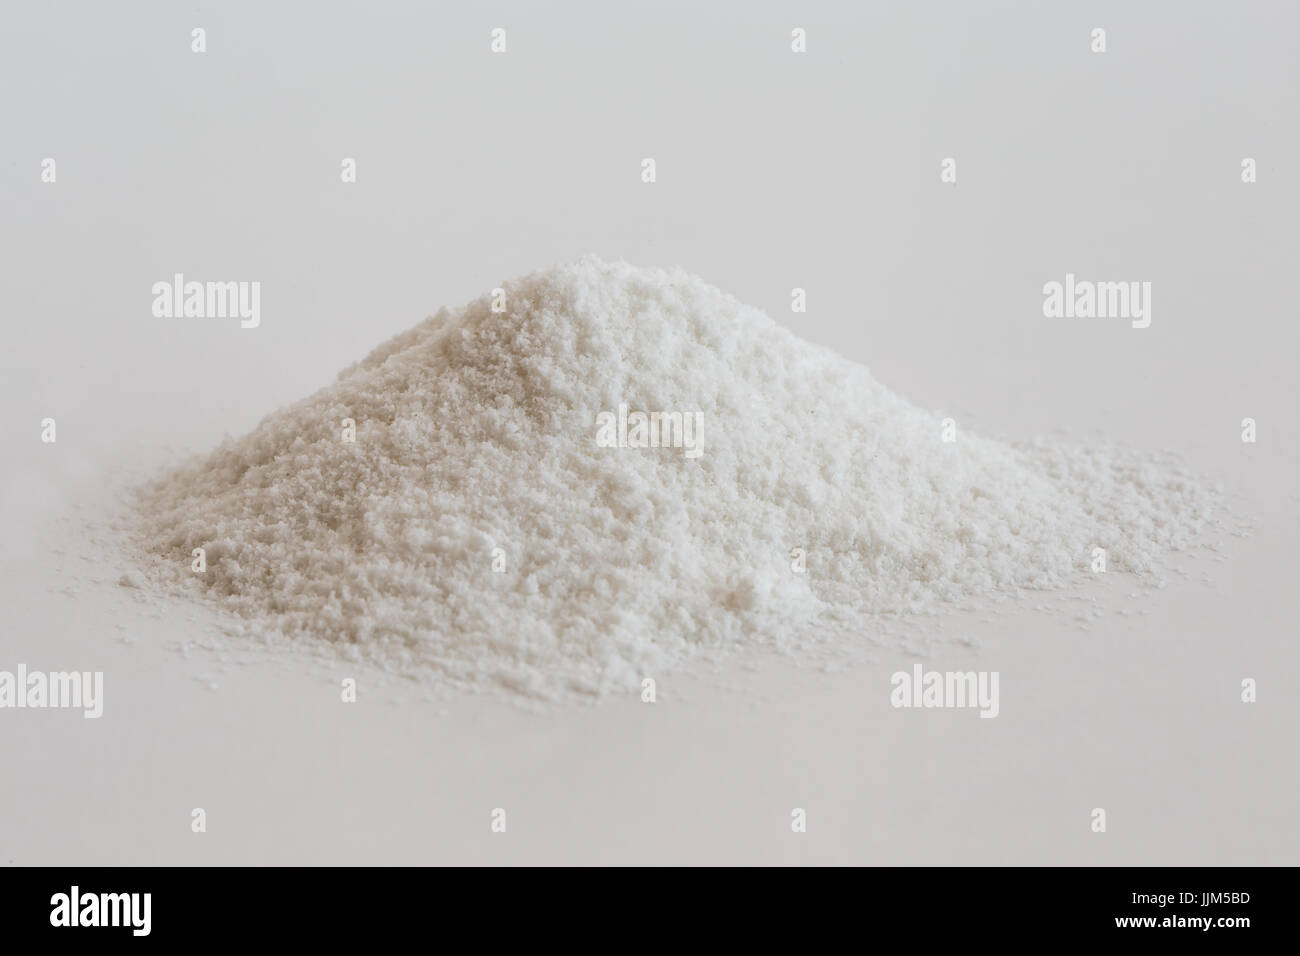 Heap of white rice flour isolated on white. Stock Photo